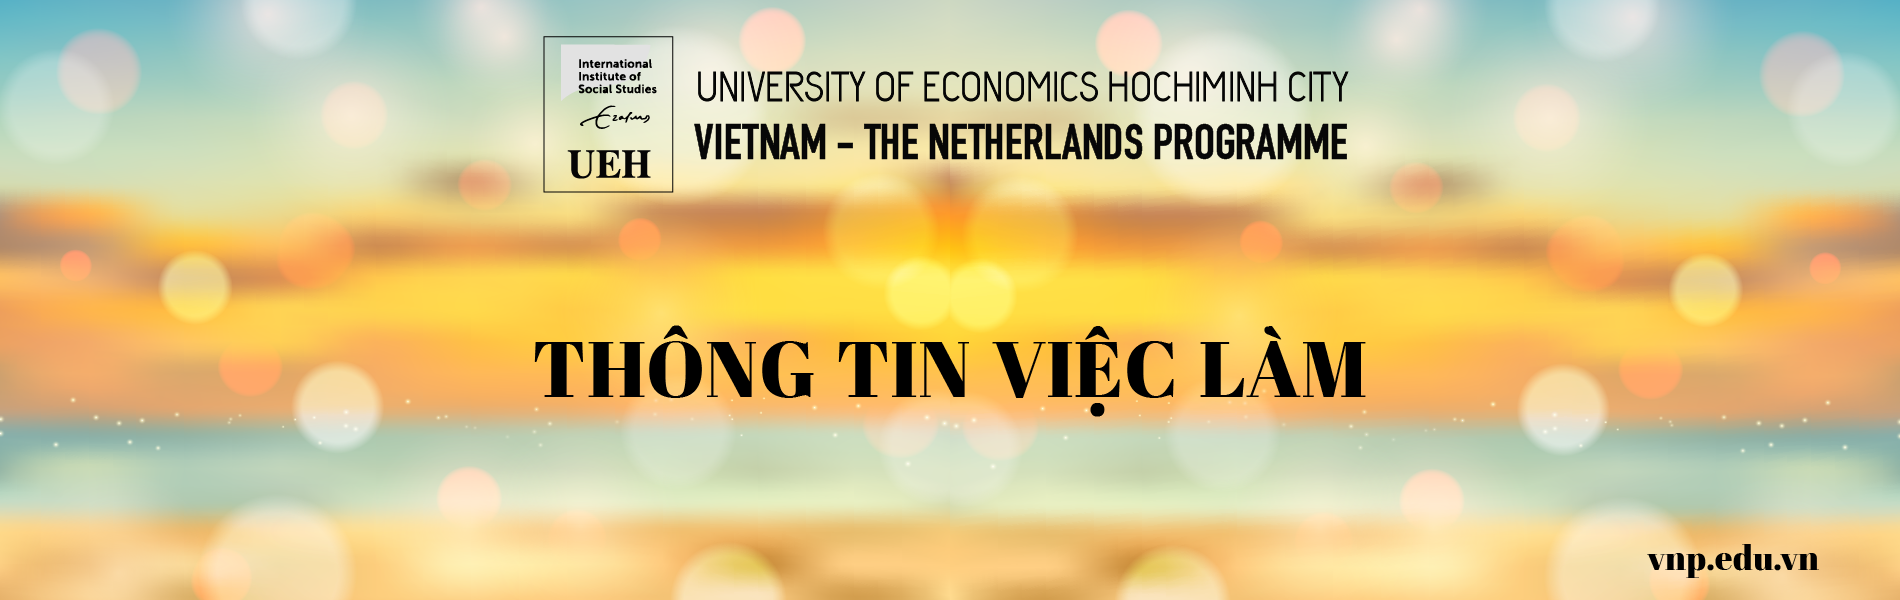 Đại học Kinh tế TPHCM (UEH) tuyển dụng đợt 1 – 2019